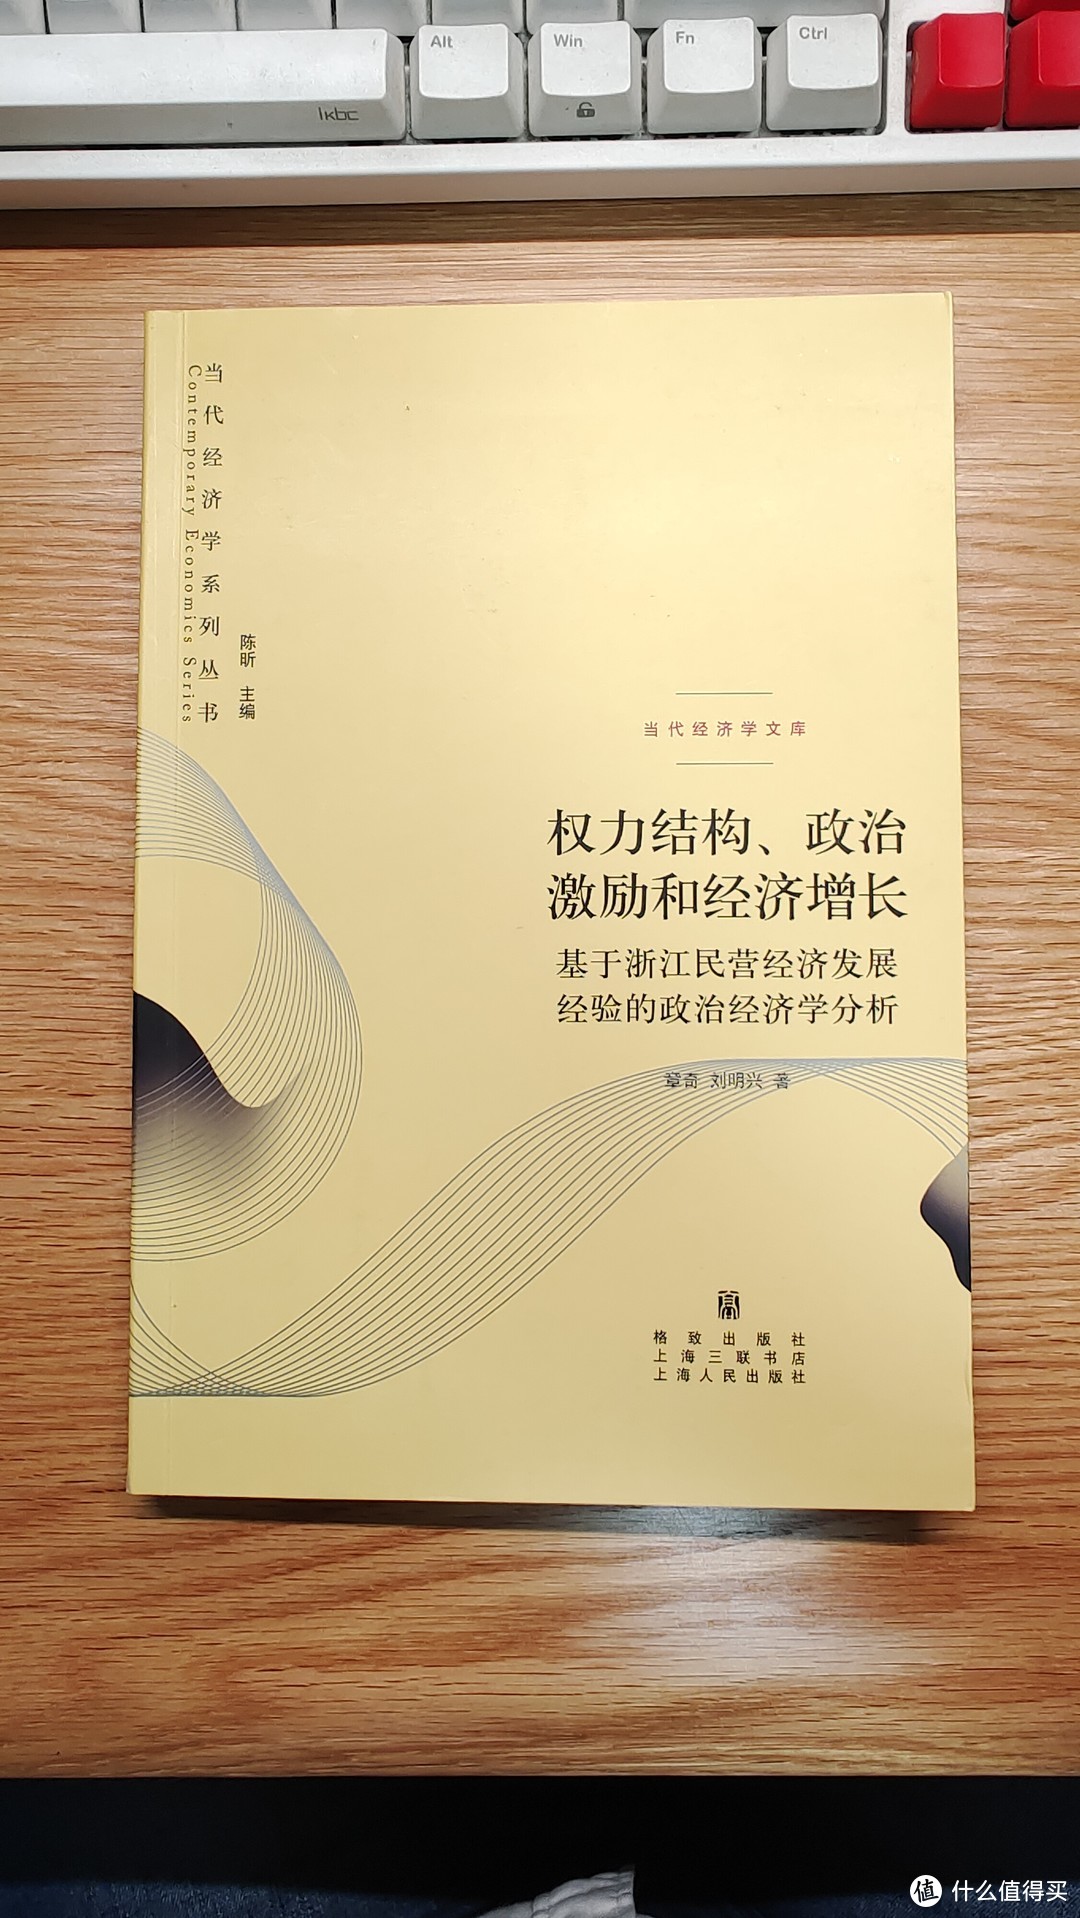 读懂中国书单——中国的传统与今天